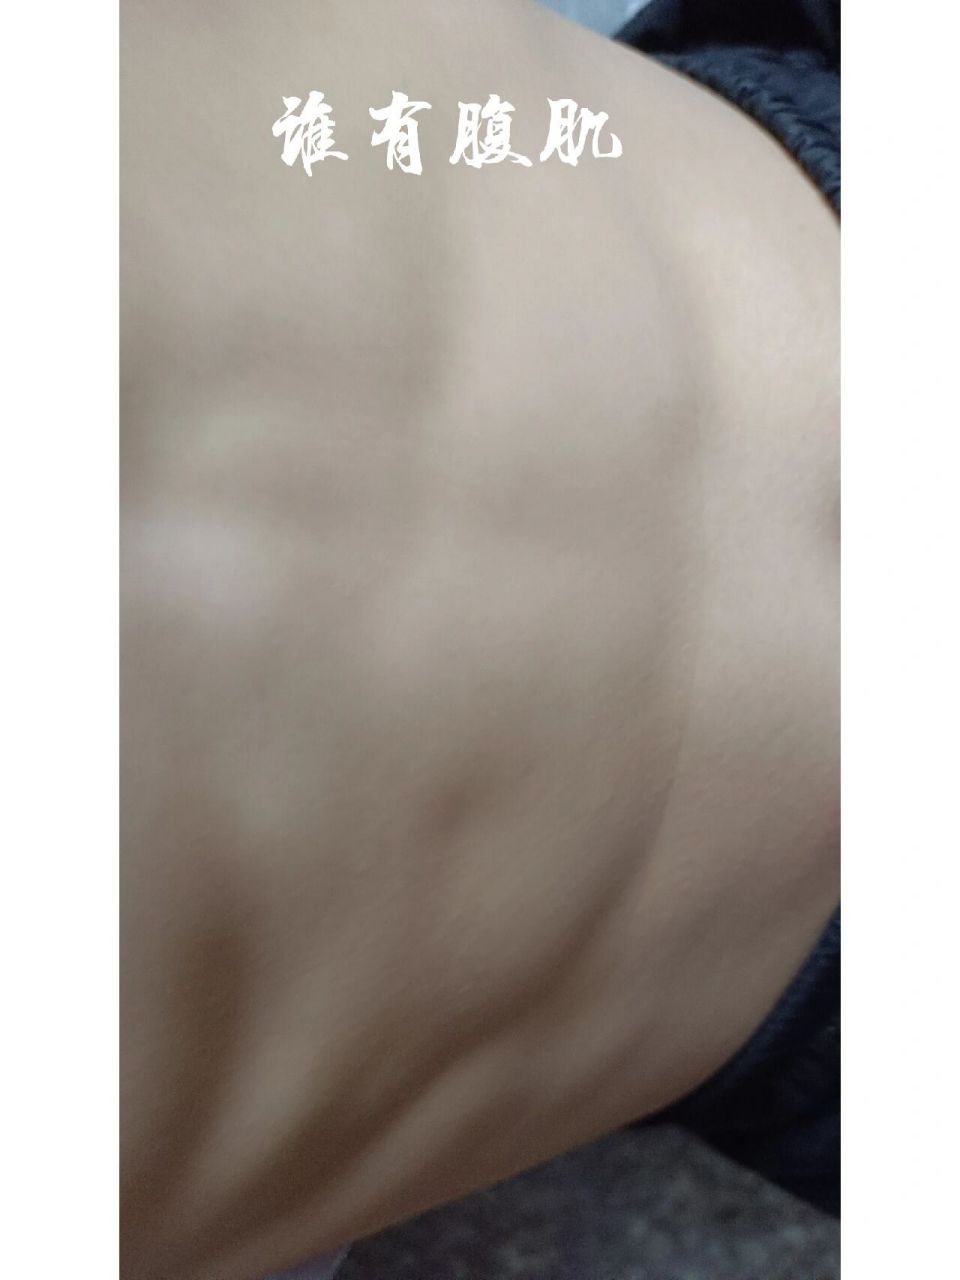 12岁小孩的腹肌图片